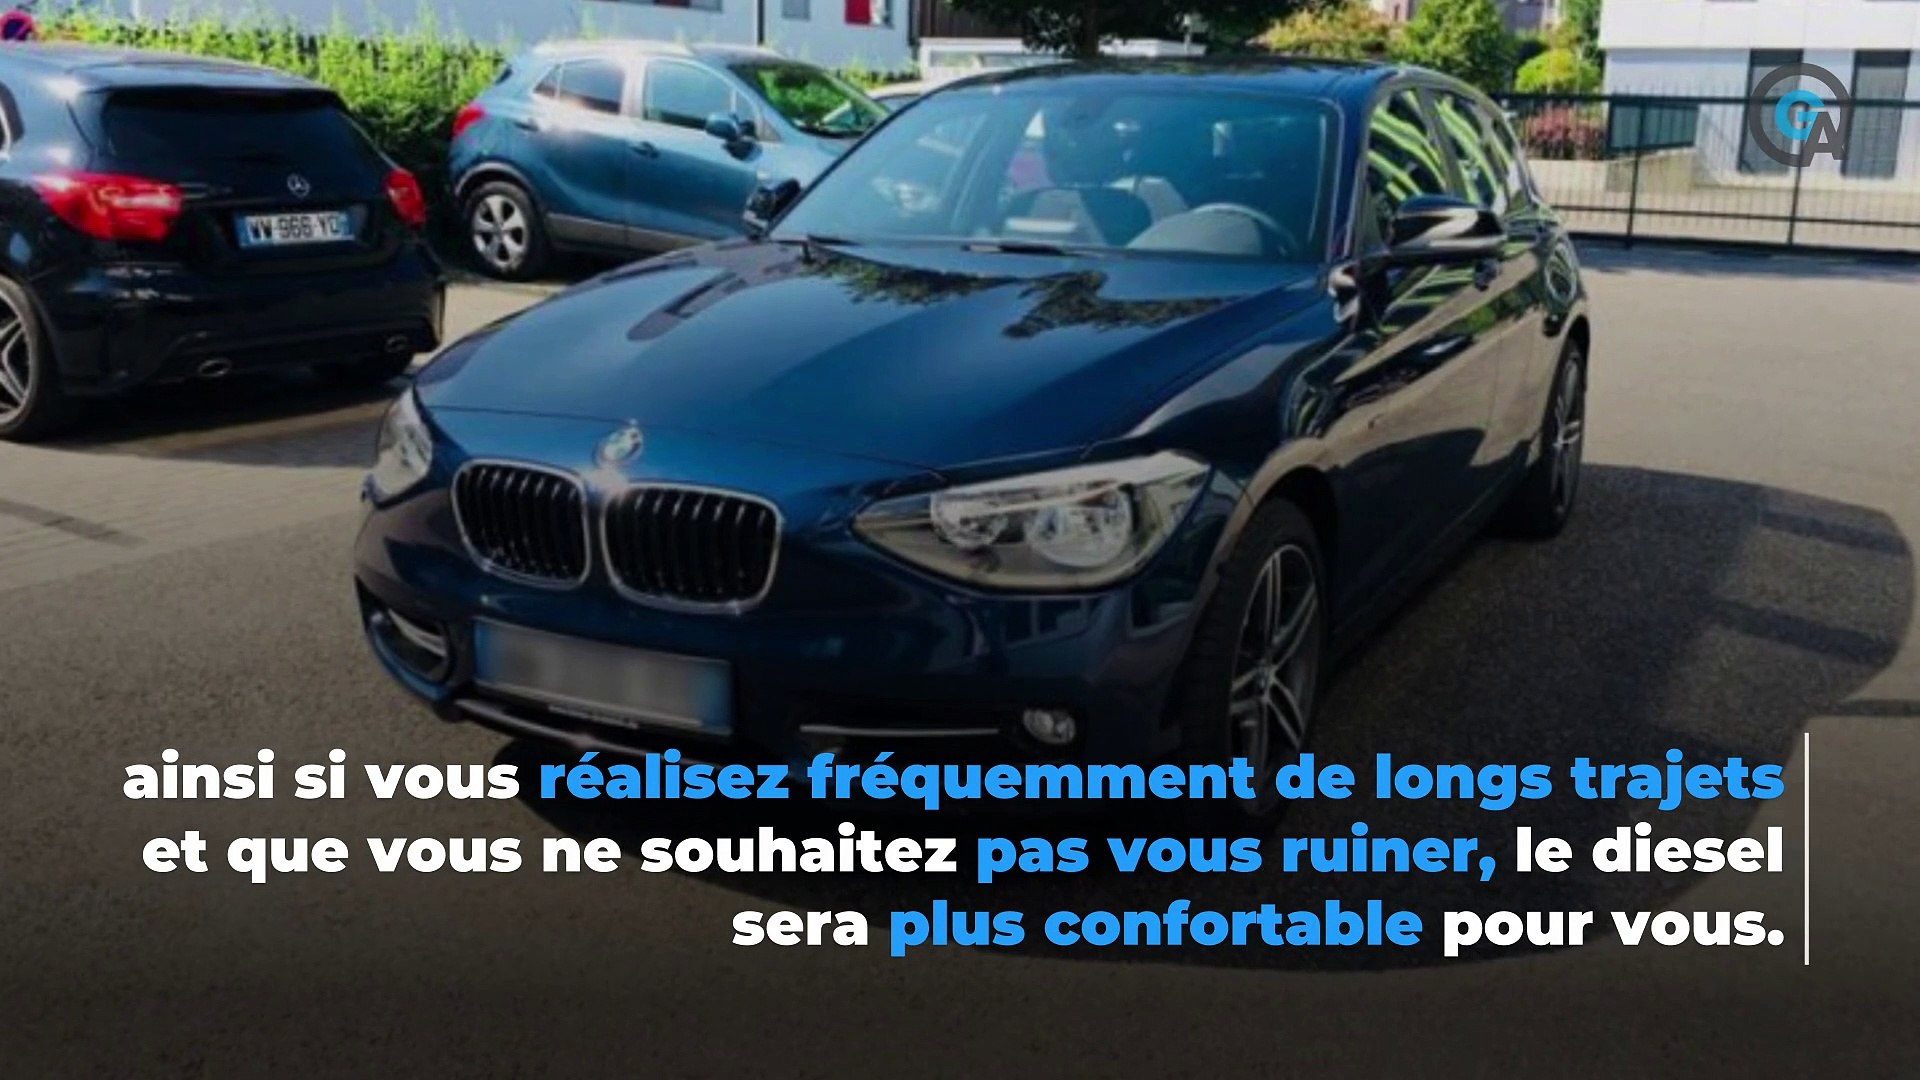 BMW Série 1 : faut-il acheter une essence ou une diesel ? - Vidéo  Dailymotion